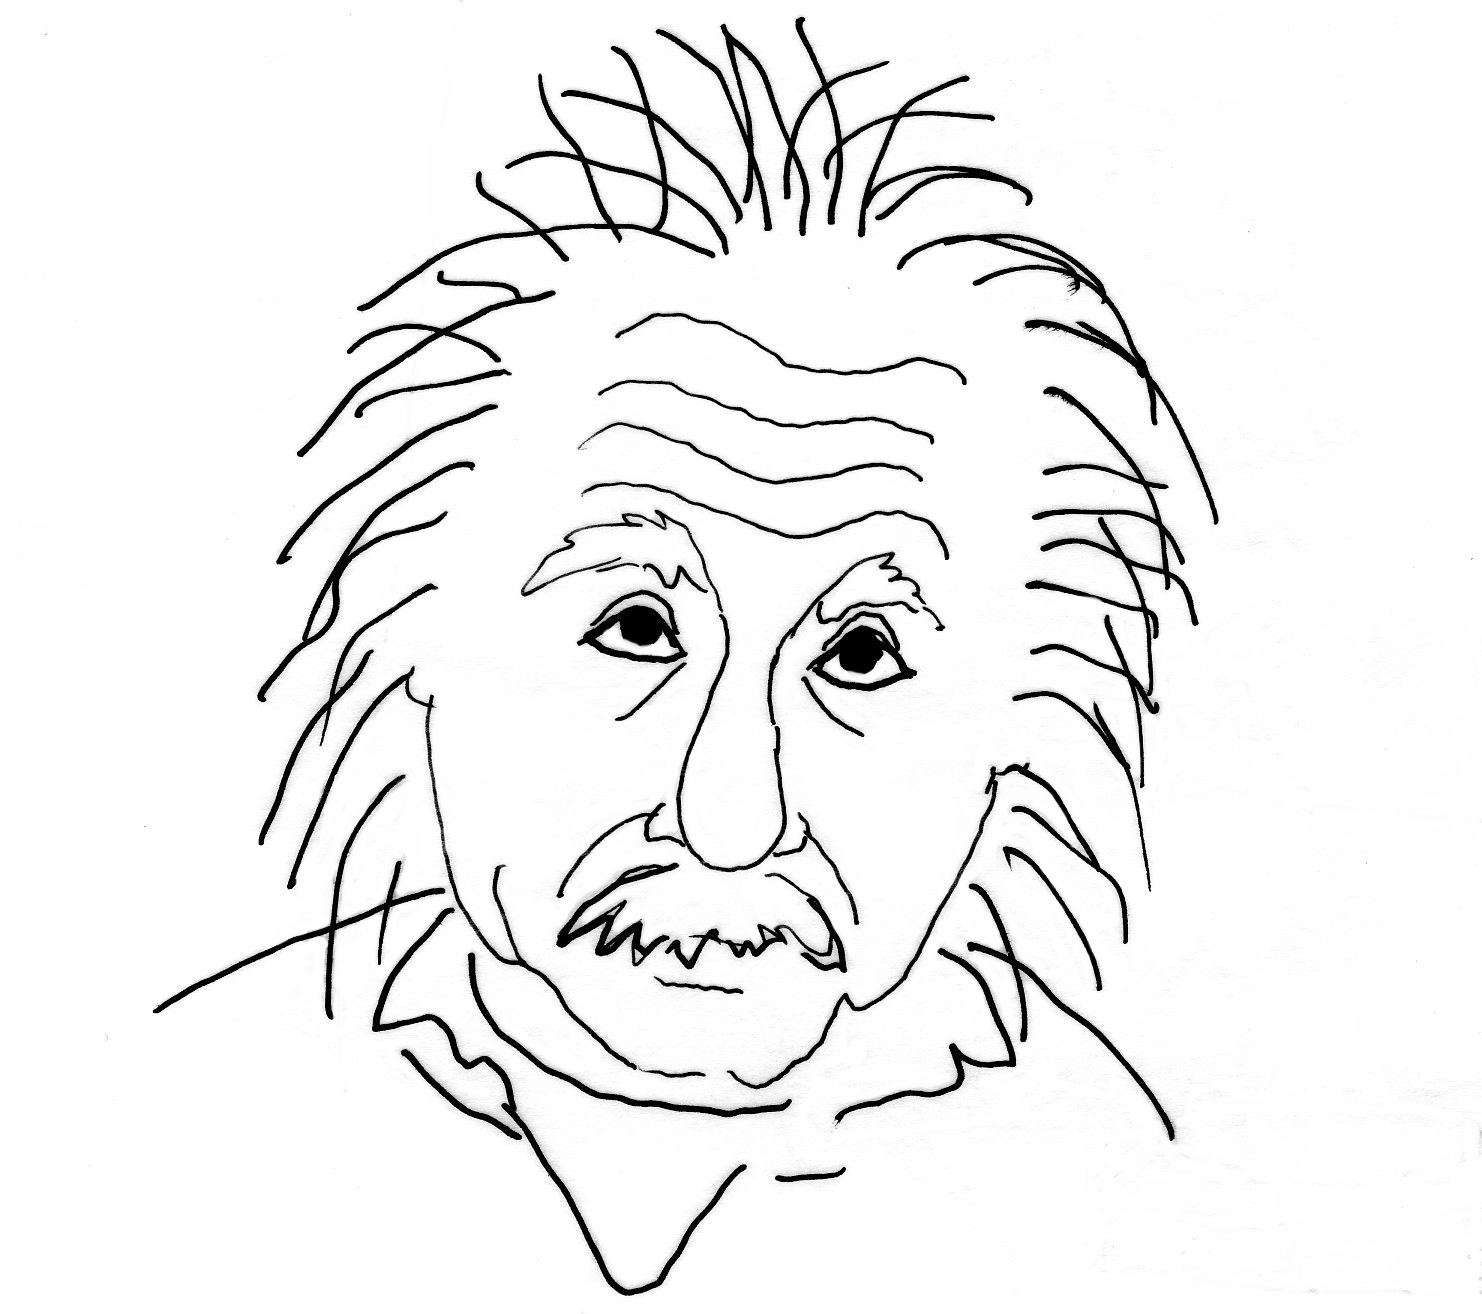 Albert Einstein Picture Drawing